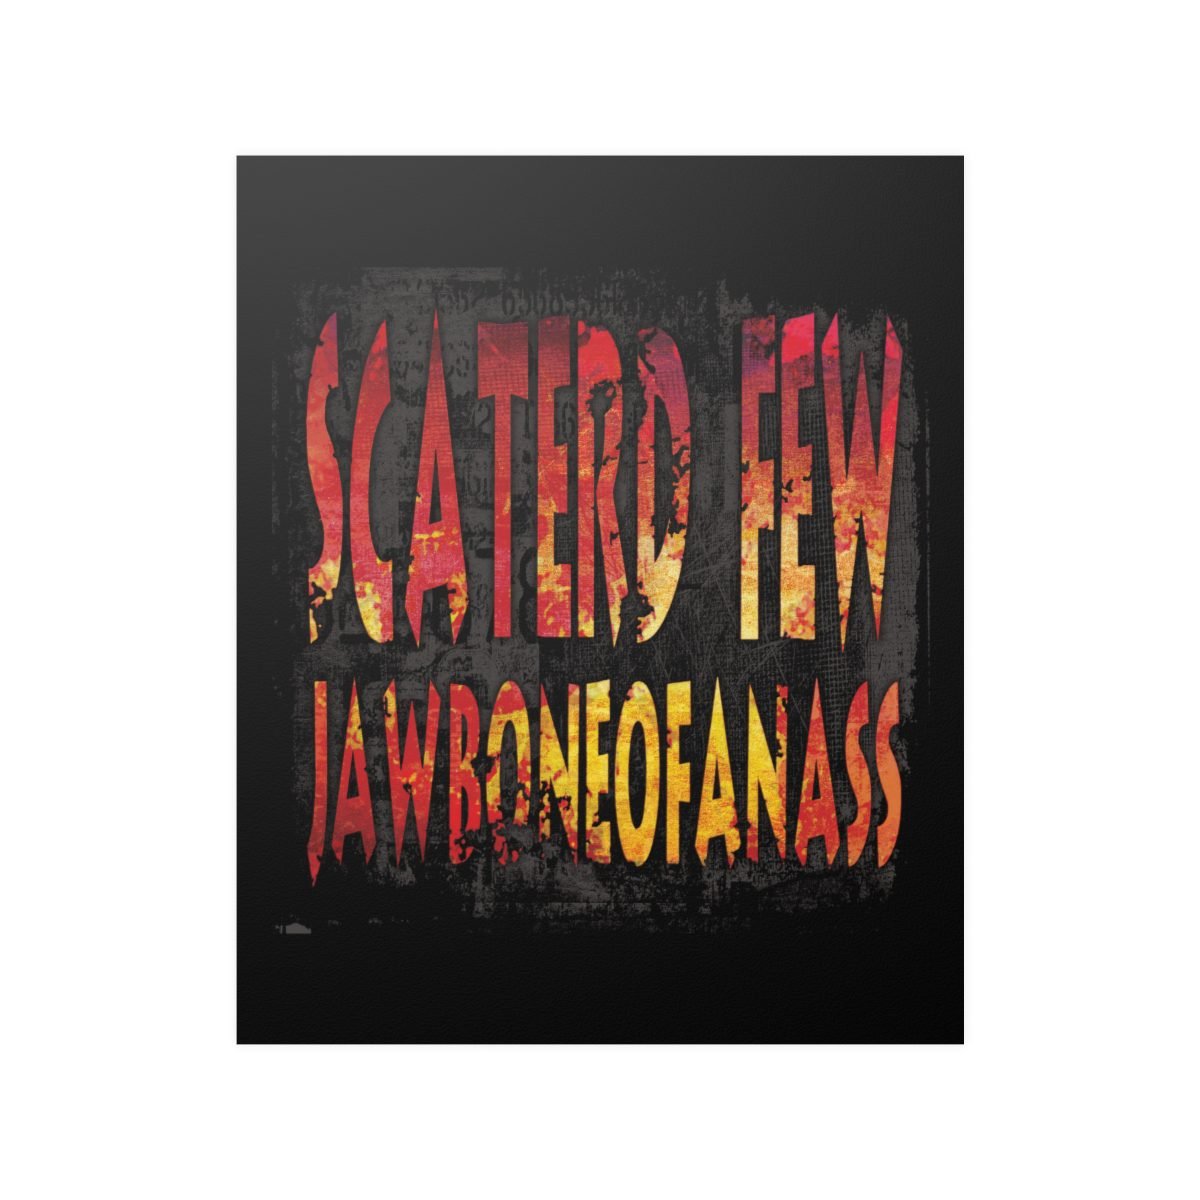 Scaterd Few – JawboneOfAnAss Posters